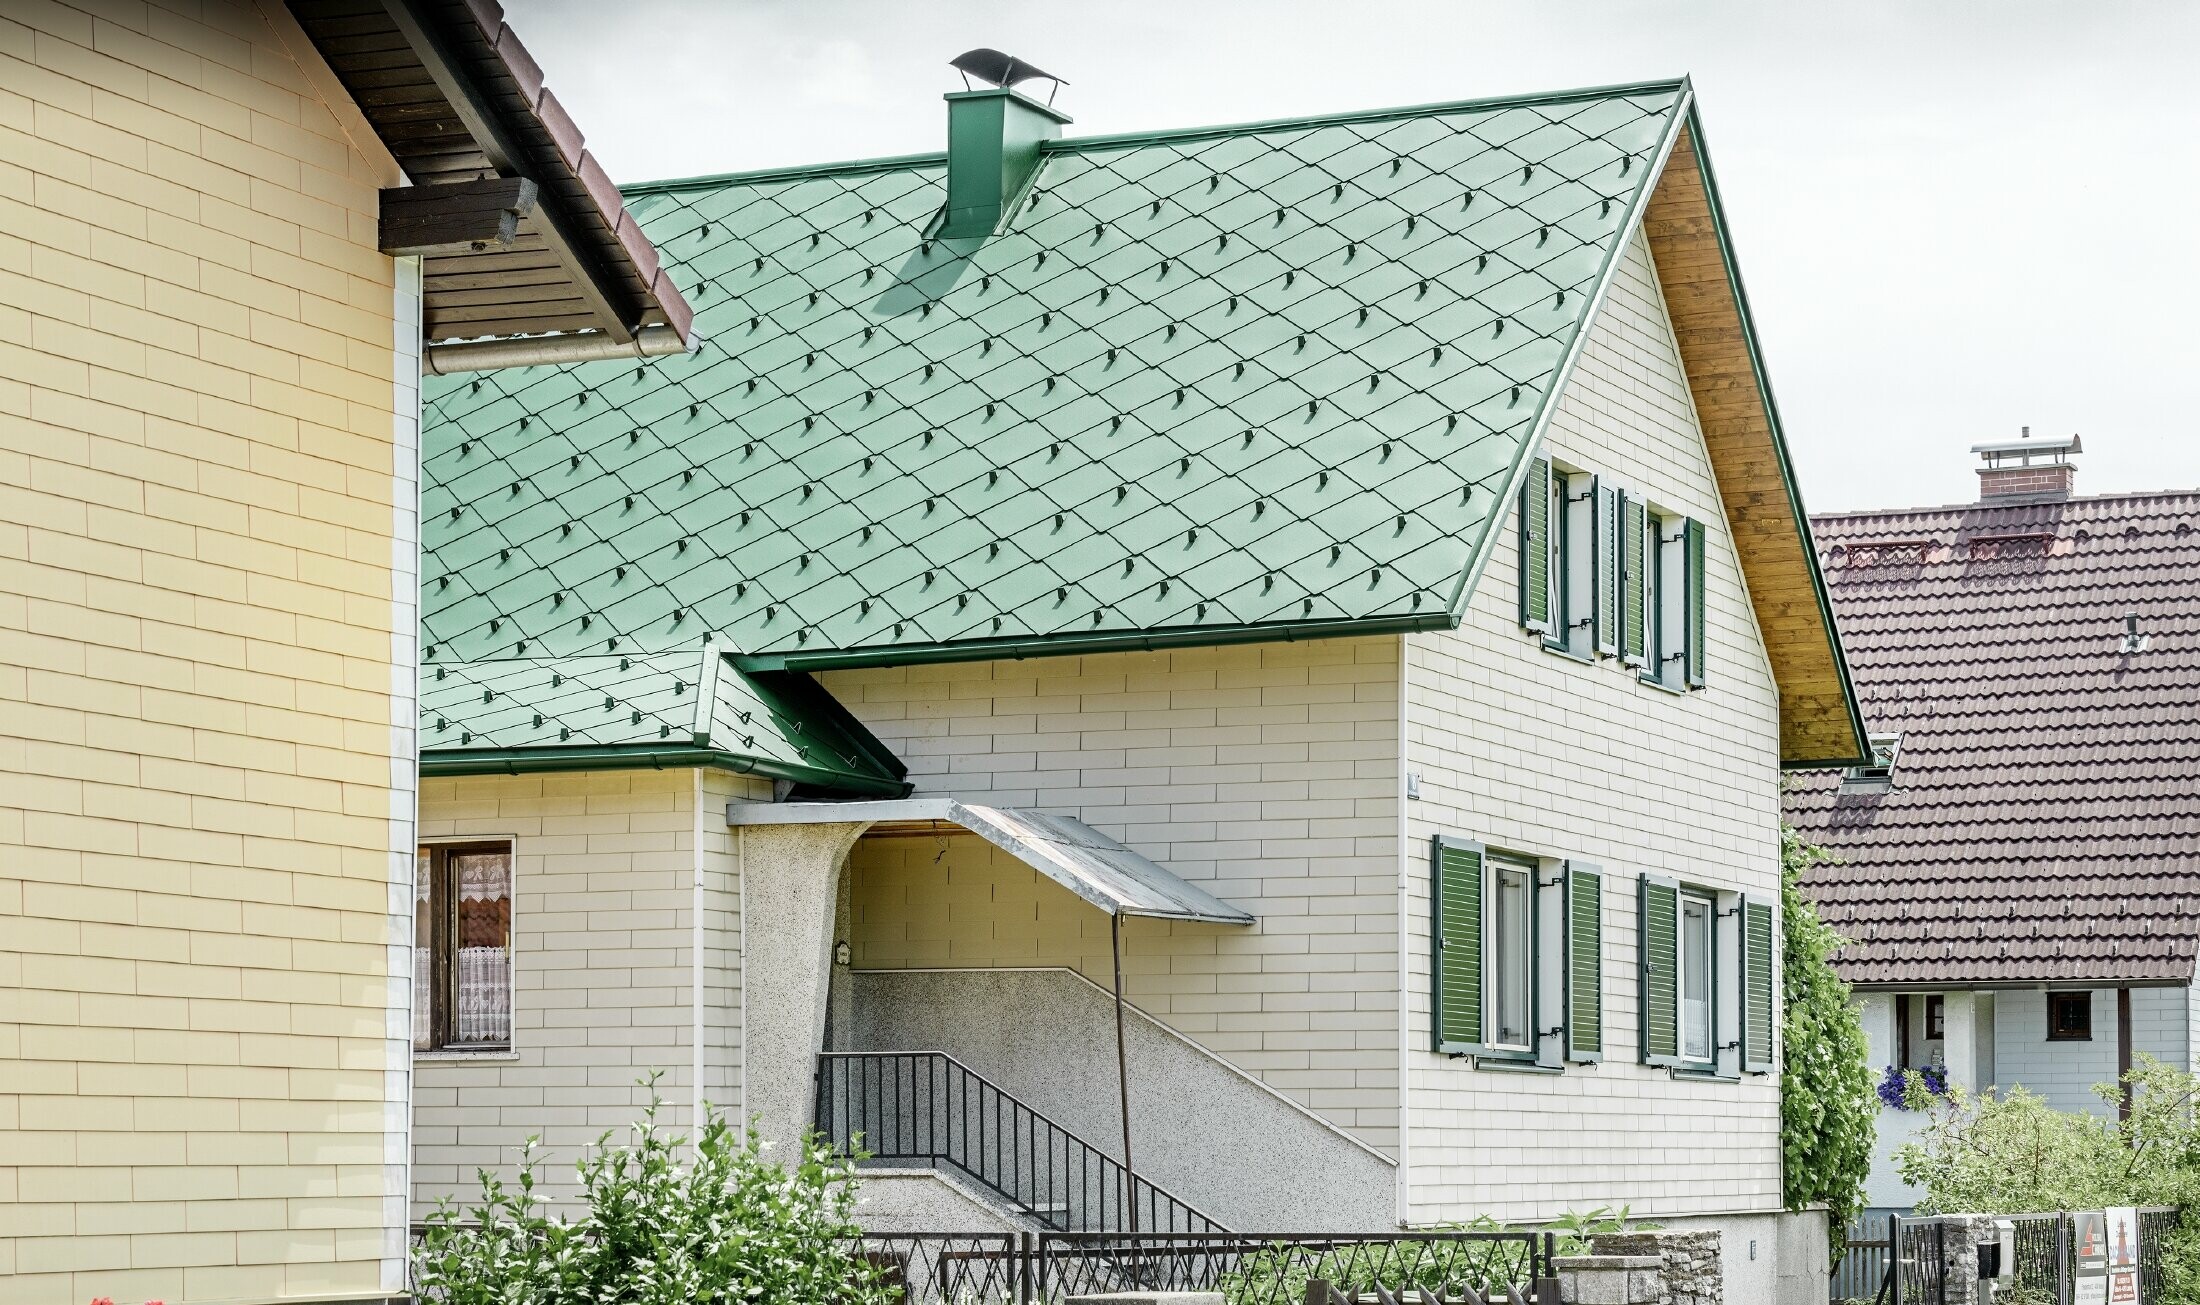 Klasična enodružinska hiša z dvokapno streho iz aluminija v močvirno zeleni barvi z zelenimi naoknicami